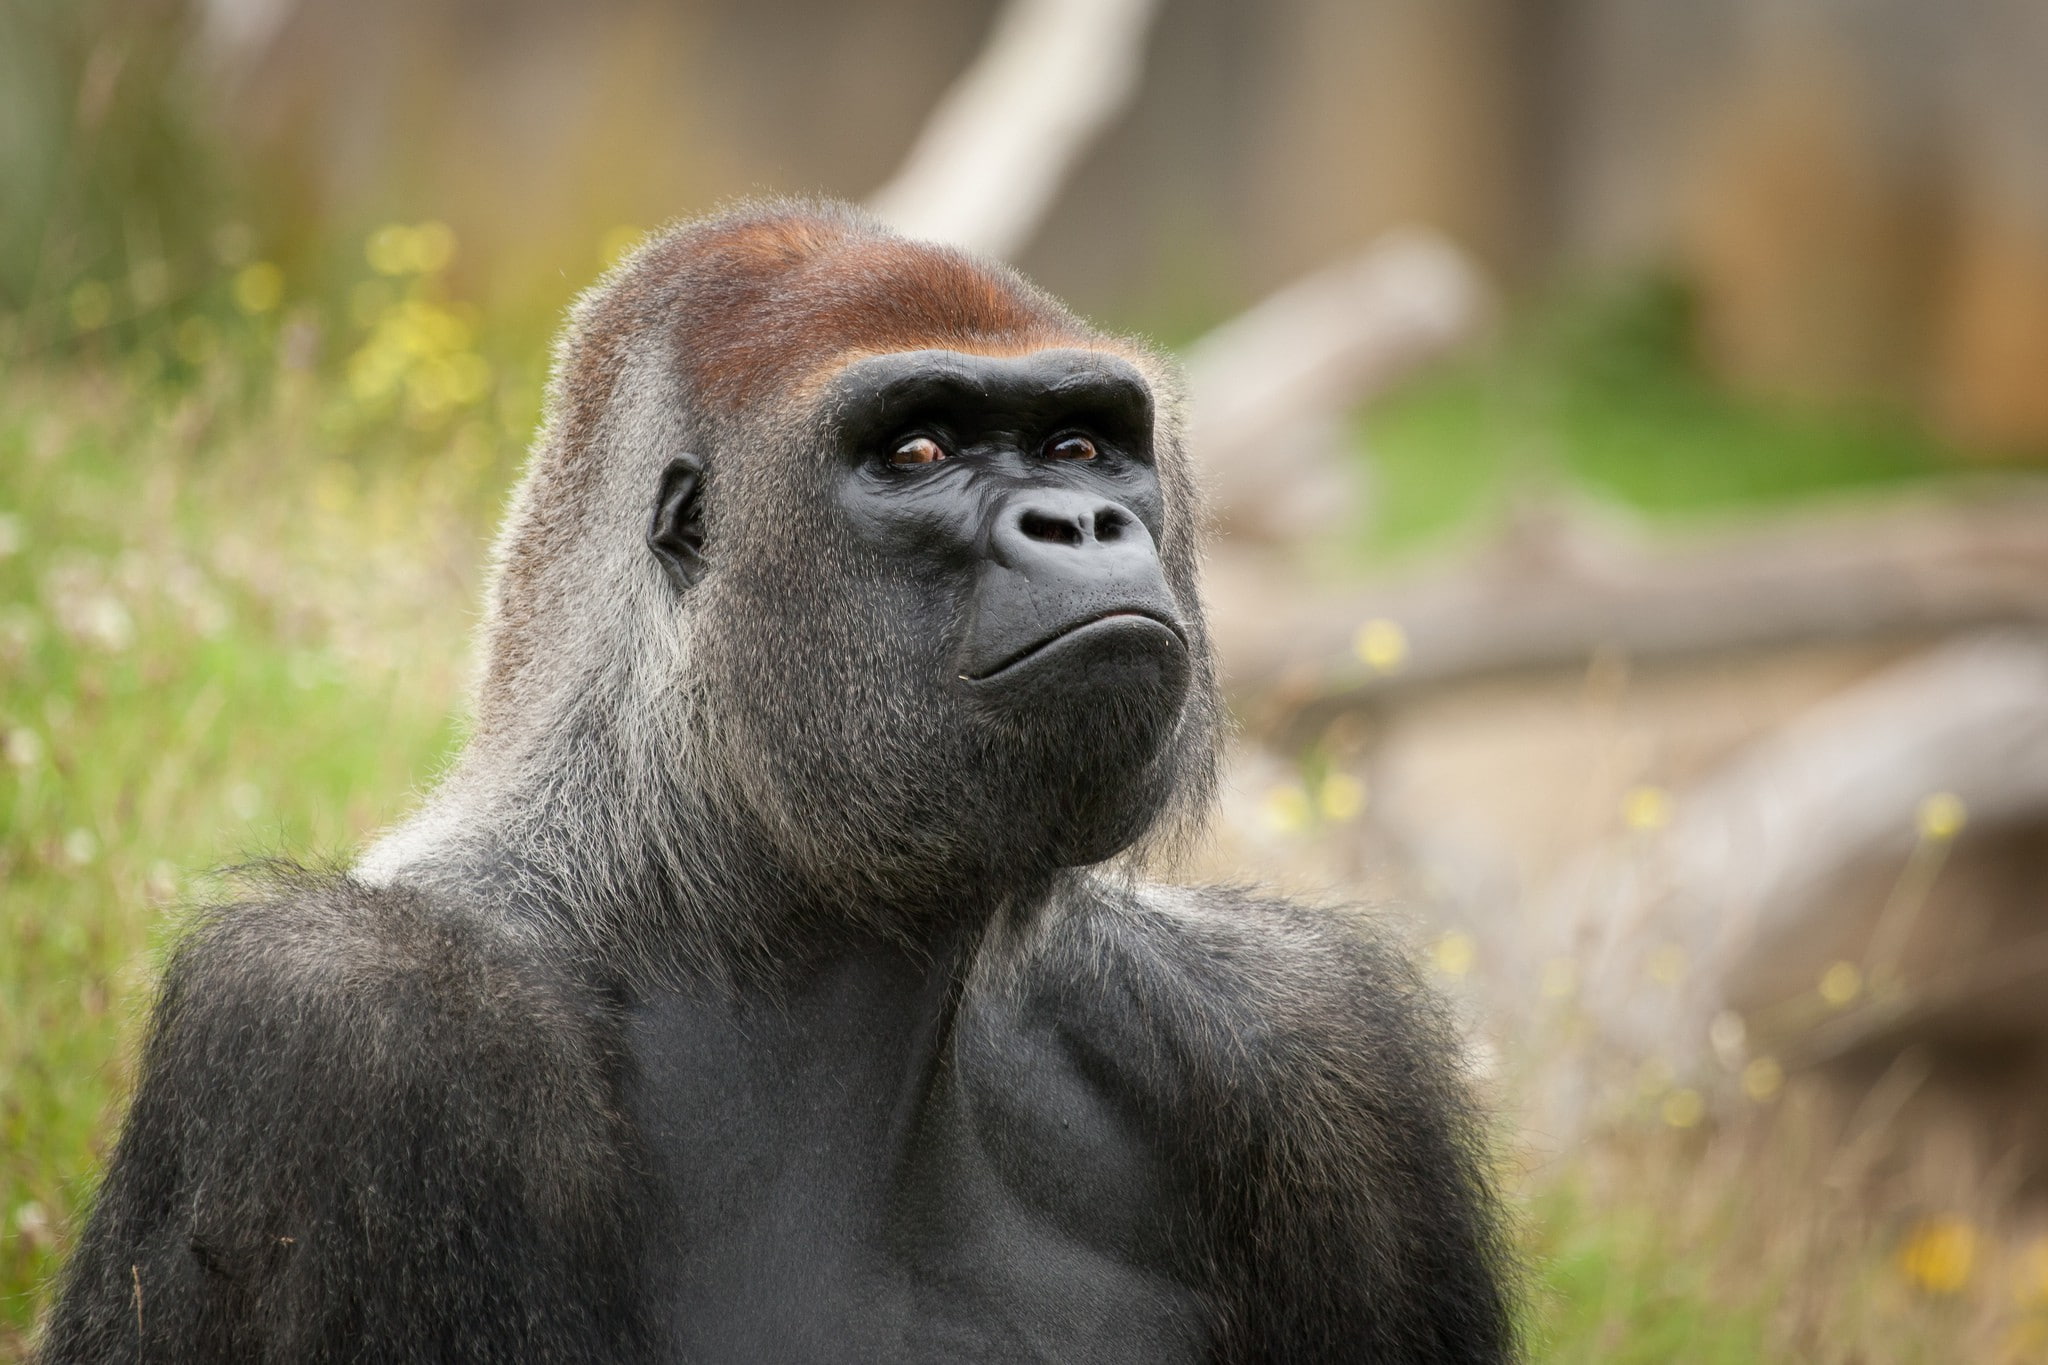 Gorilla Monkey primate, muzzle, eyes